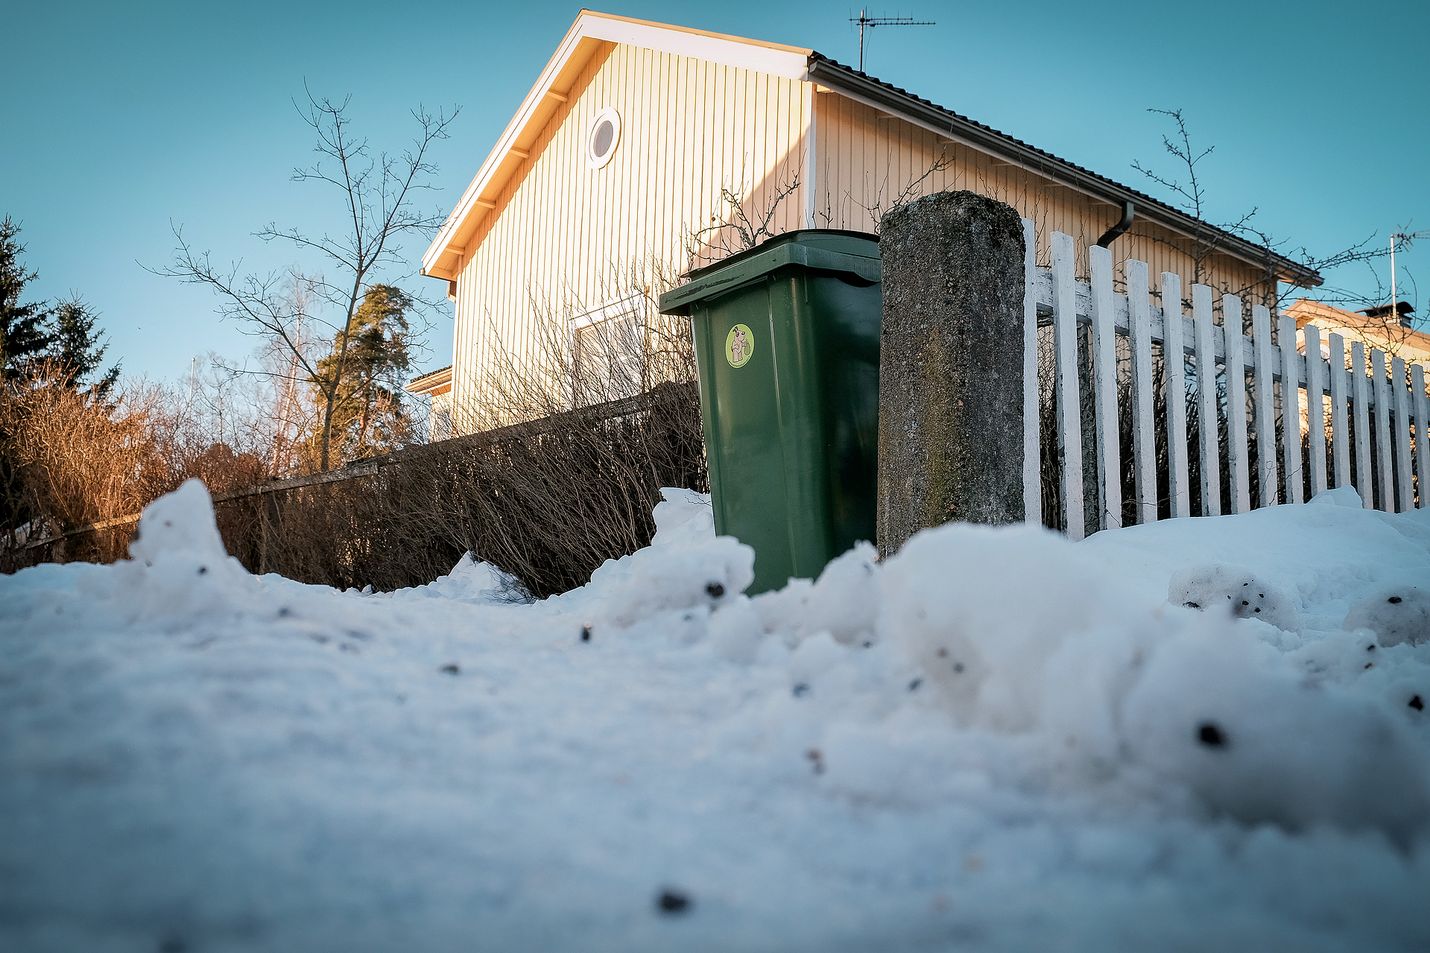 Kuluvan talven sahaavat lämpötilat ja lumisateet ovat luoneet haastavat toimintaolosuhtet myös Rauman seudun jätehuoltolaitoksen työntekijöille. Oman roskiksen ympäristö kannattaa pitää kolattuna ja hiekoitettuna.